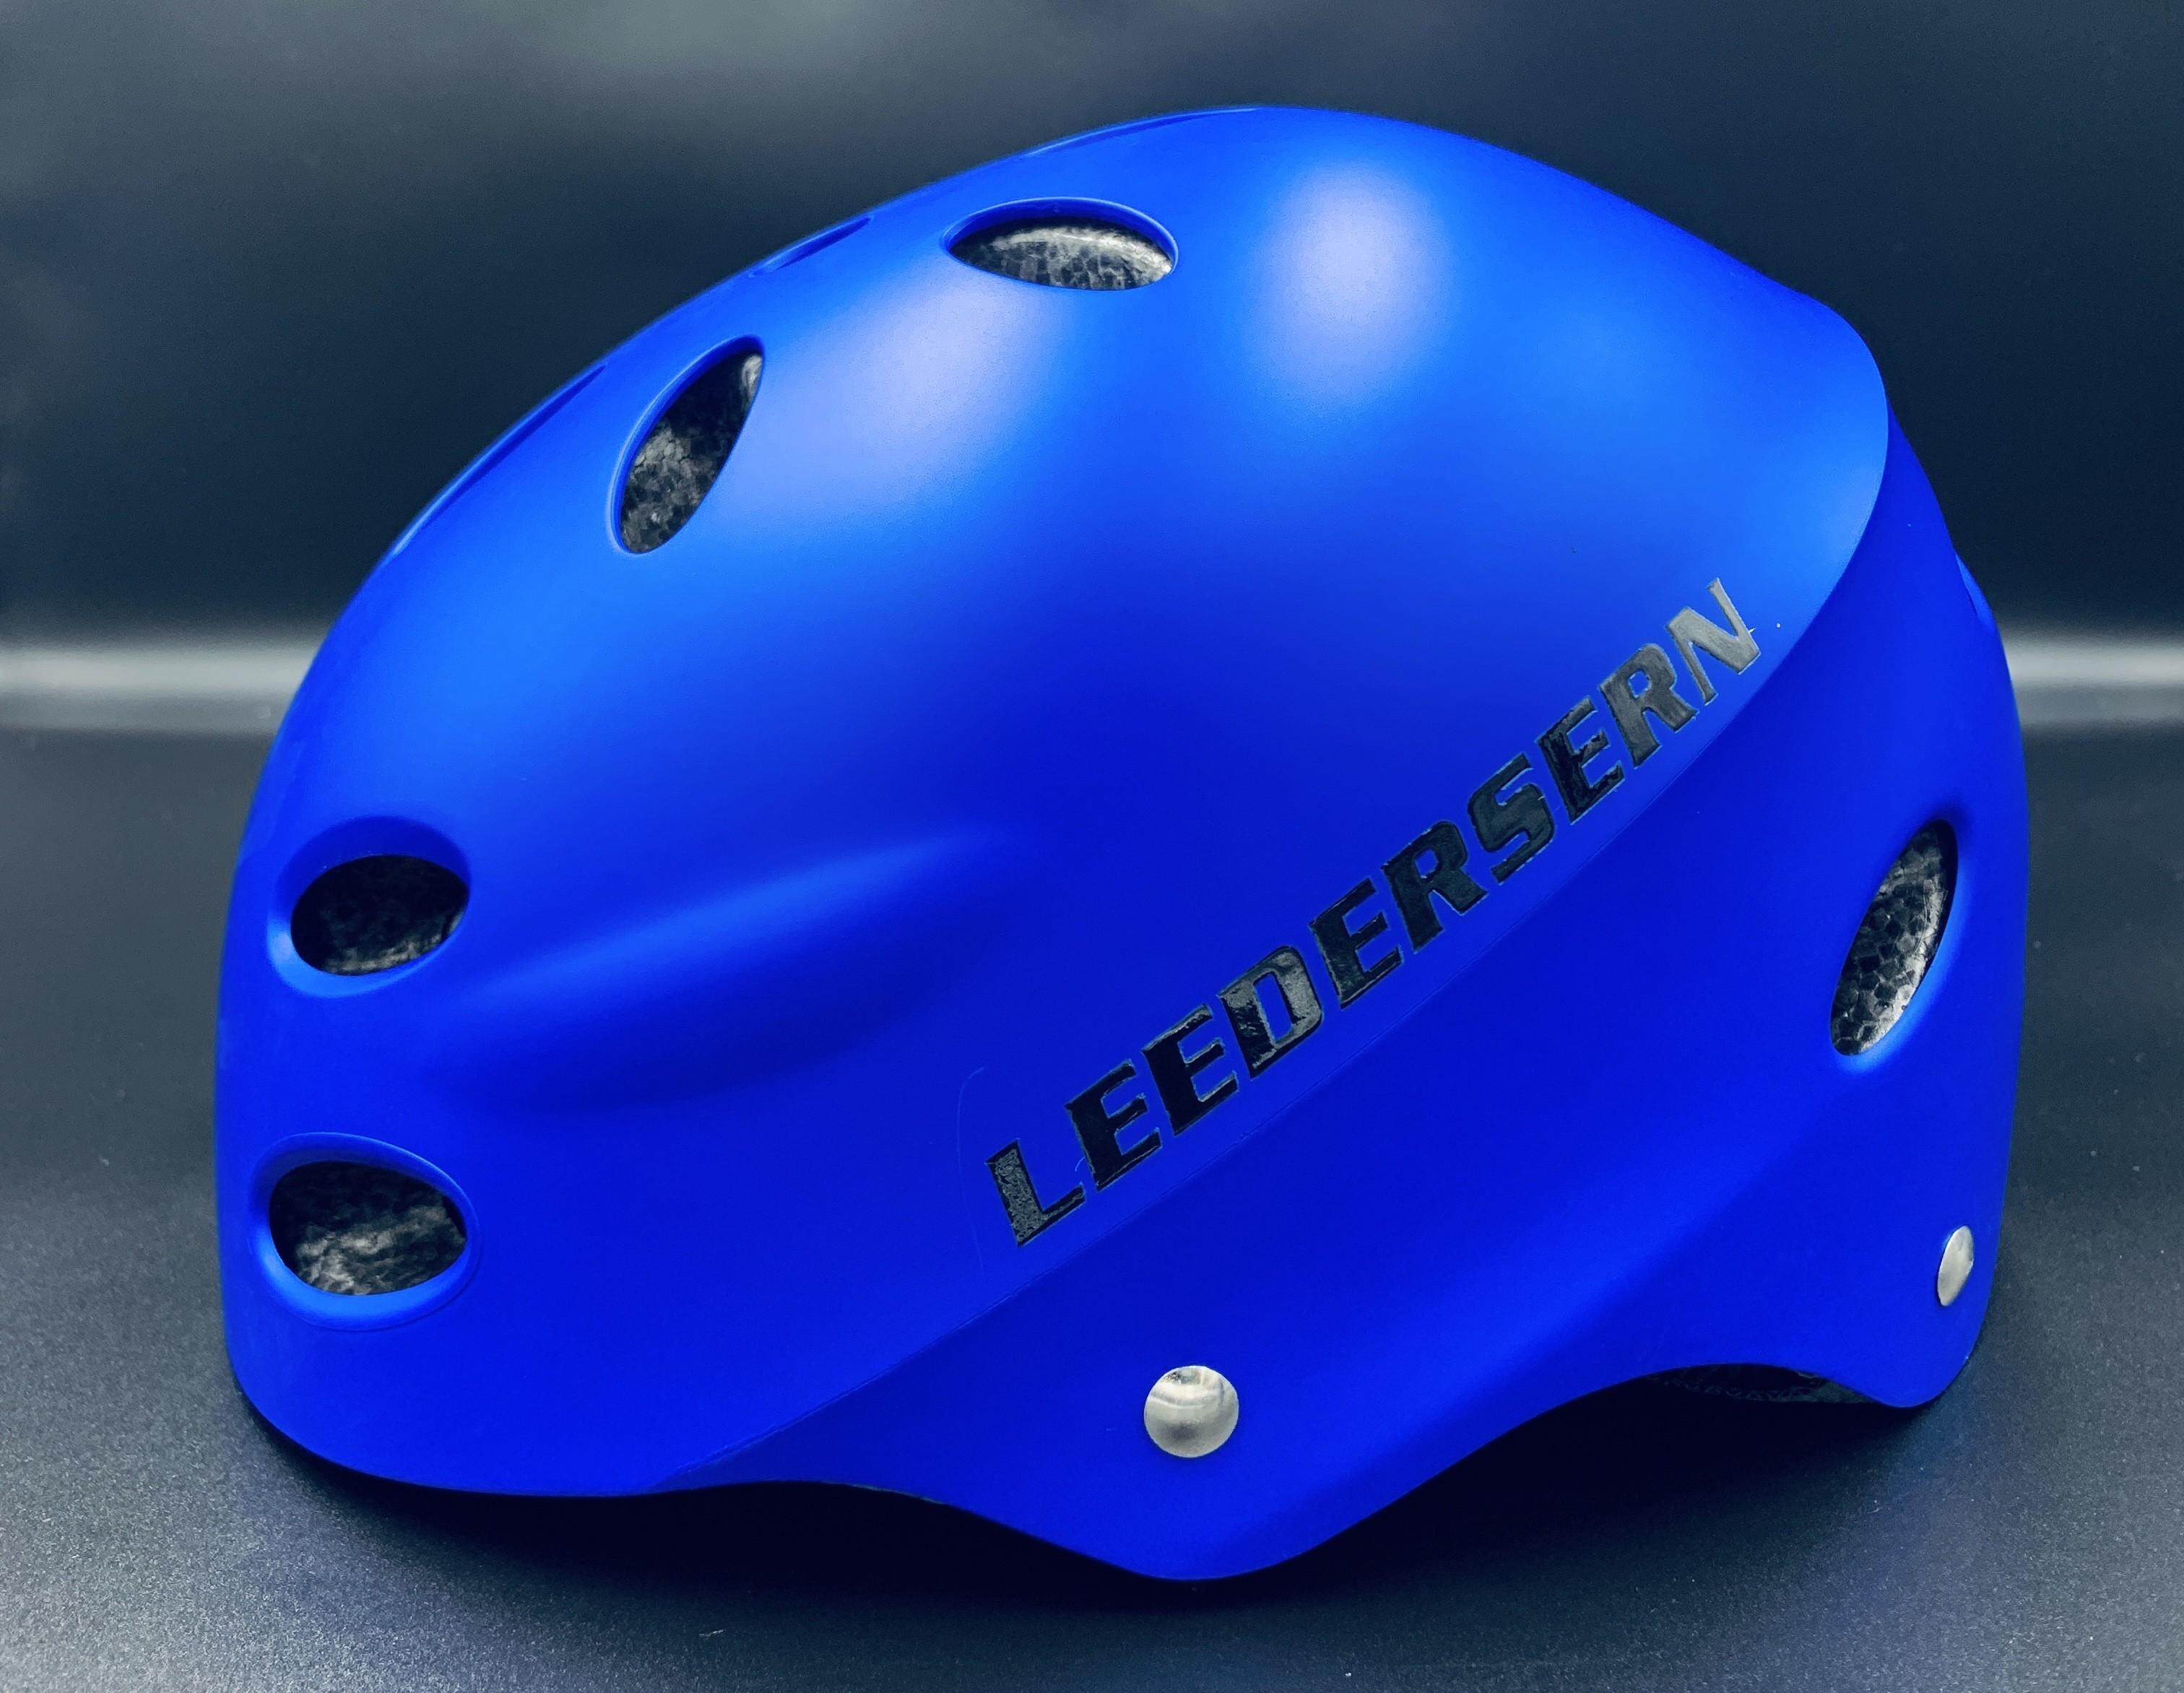 หมวกจักรยาน LEEDERSERN 2021 (ทรง FOX) ไซซ์ M/L 54-62 cm.